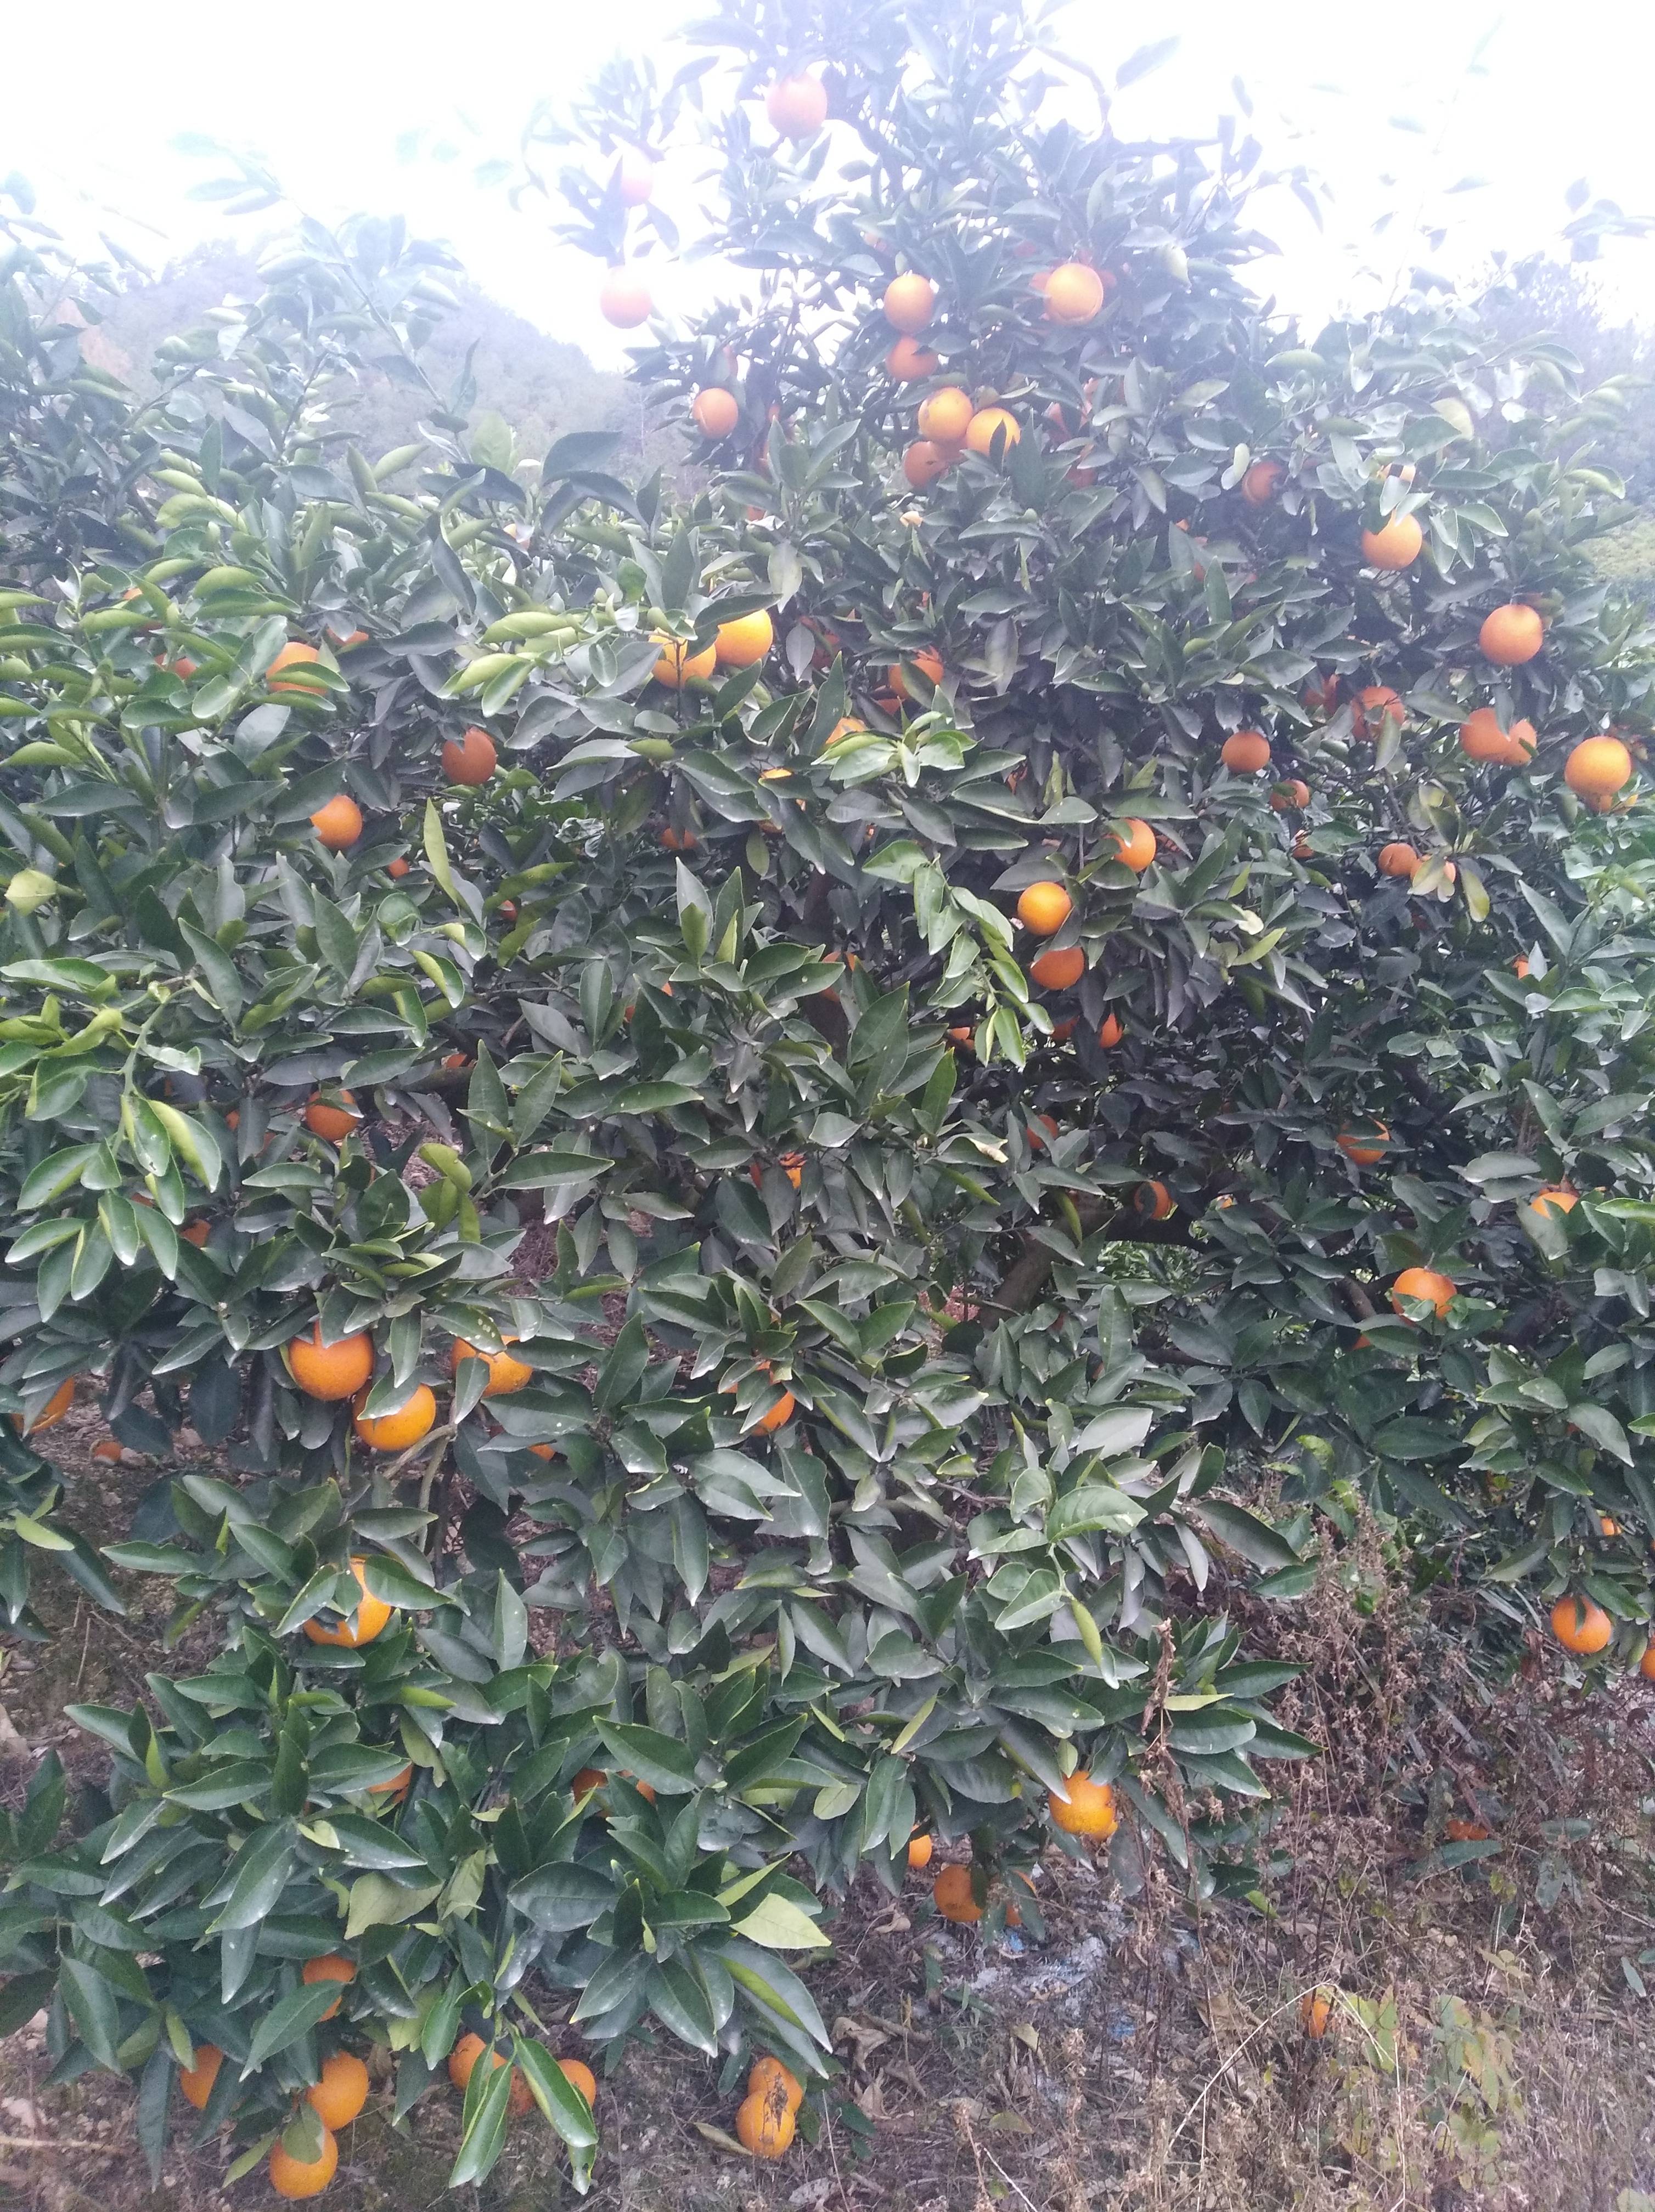 松阳脐橙生产起步于1992年，1995年松阳脐橙被确立为松阳县农业主导产业。松阳脐橙具有果大、色艳、皮薄、质脆、肉化渣、汁液多、风味浓郁、耐储运等特点，目前松阳